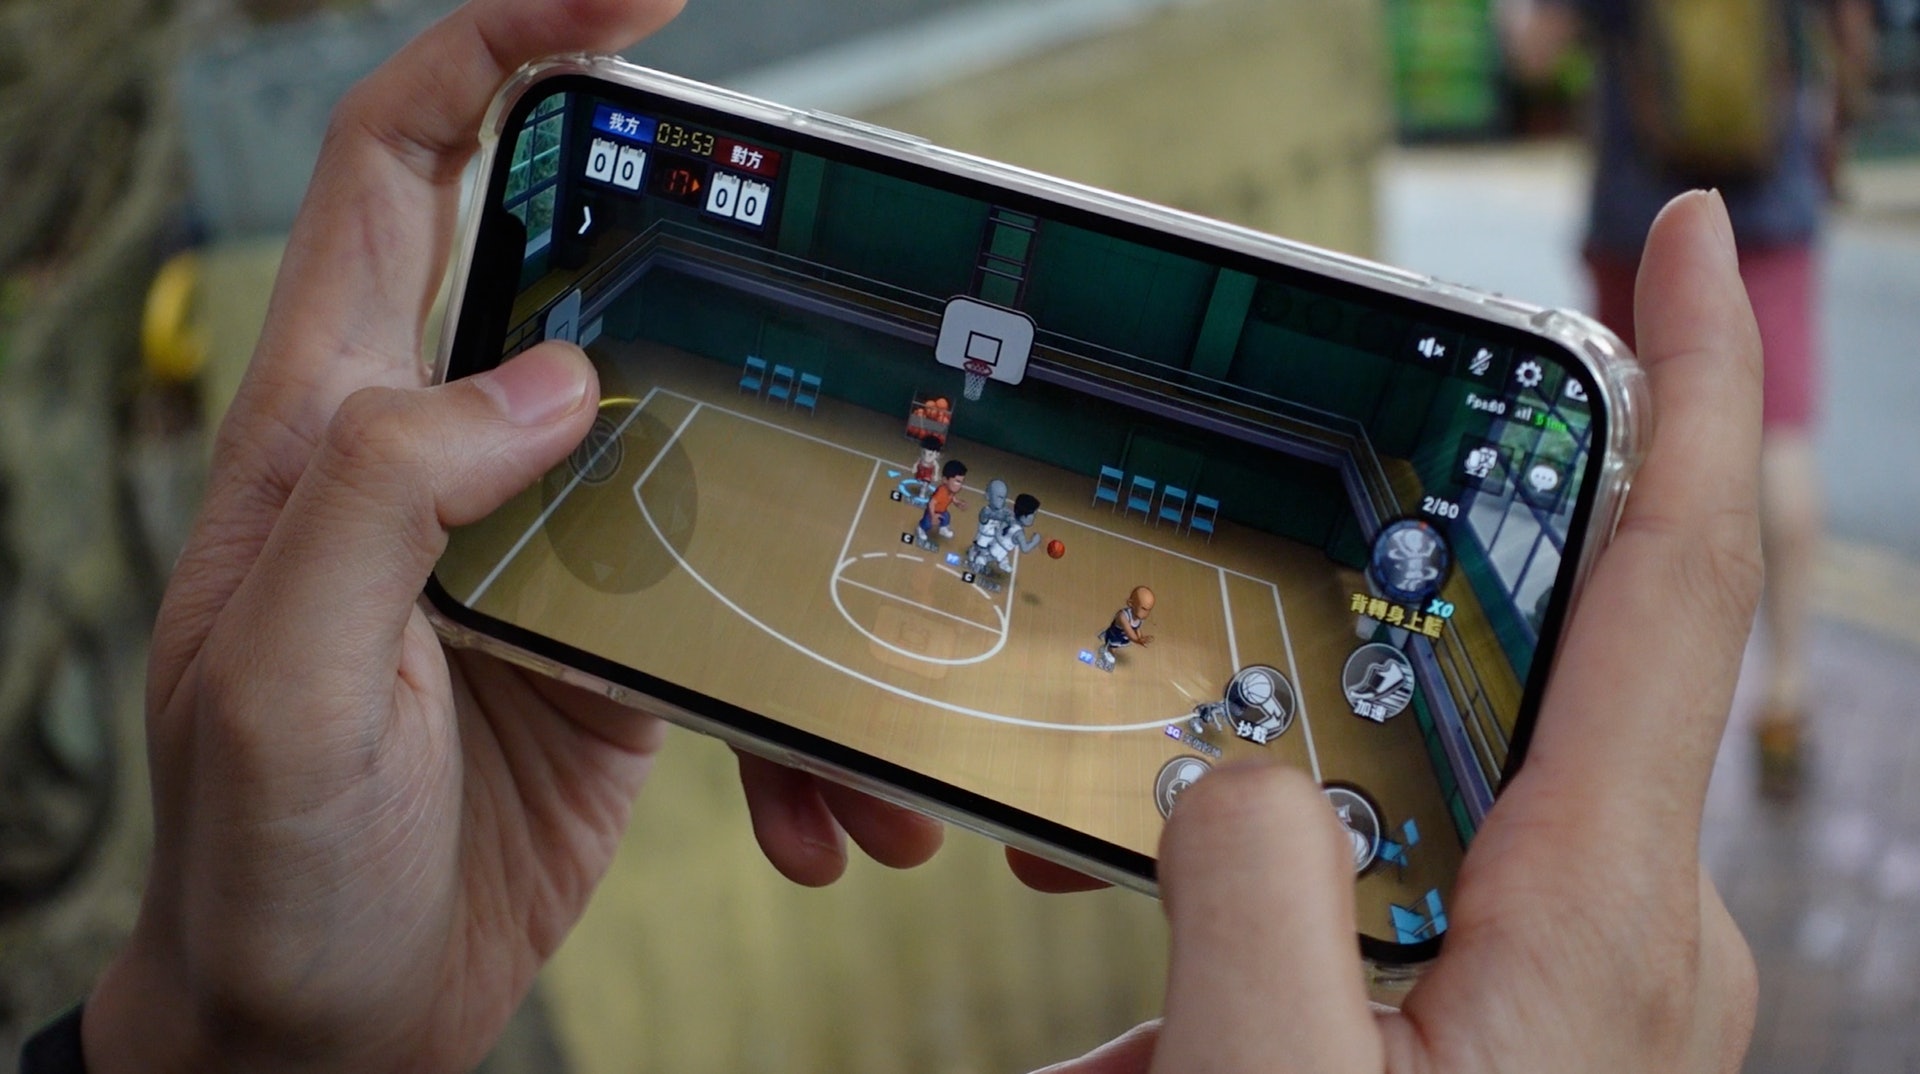 以 SmarTone 5G 網絡進行實時對戰的網絡手機遊戲，基本上沒有延遲，人物走位、射球的動作都可以即時跟上玩家的操作